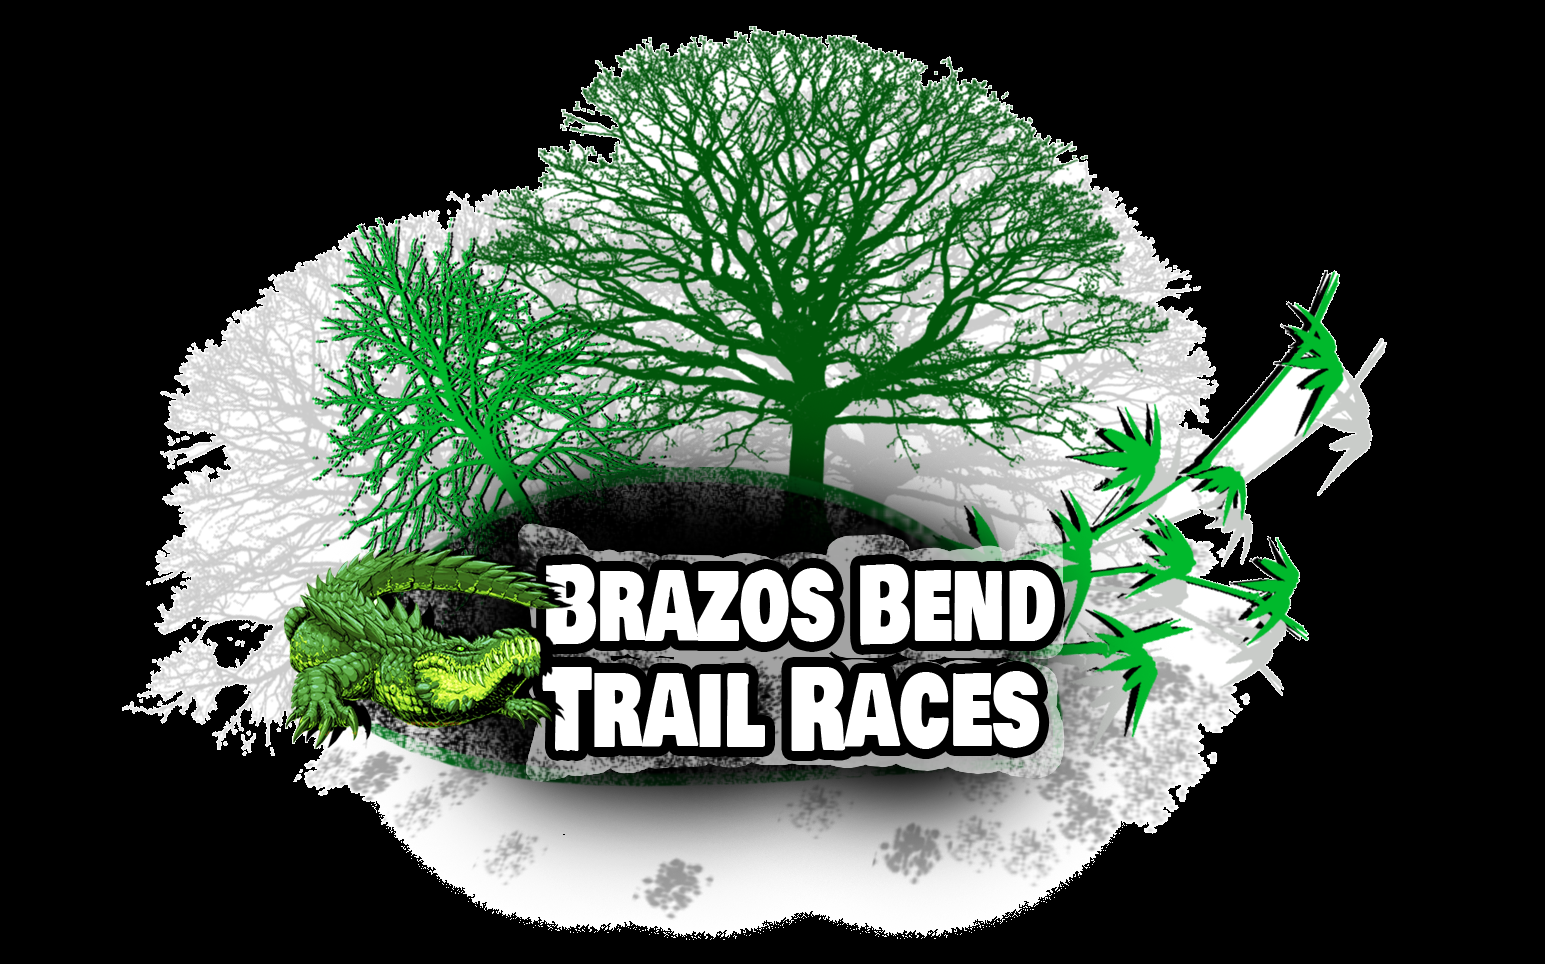 Brazos Bend Trail Races